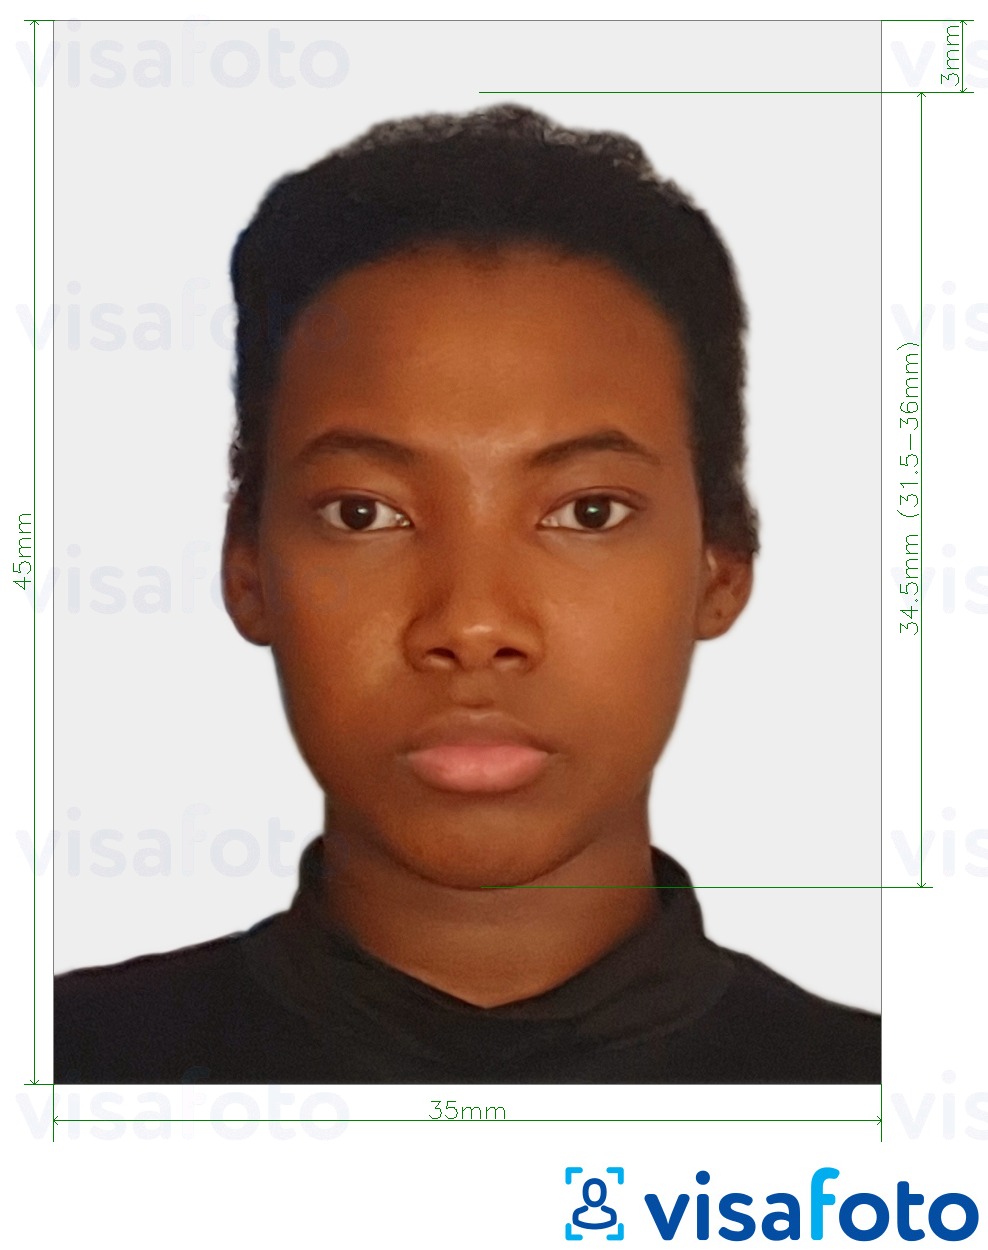 Przykład zdjęcia dla Paszport Togo 4,5x3,5 cm (45 x 35 mm) z podaniem dokładnego rozmiaru.